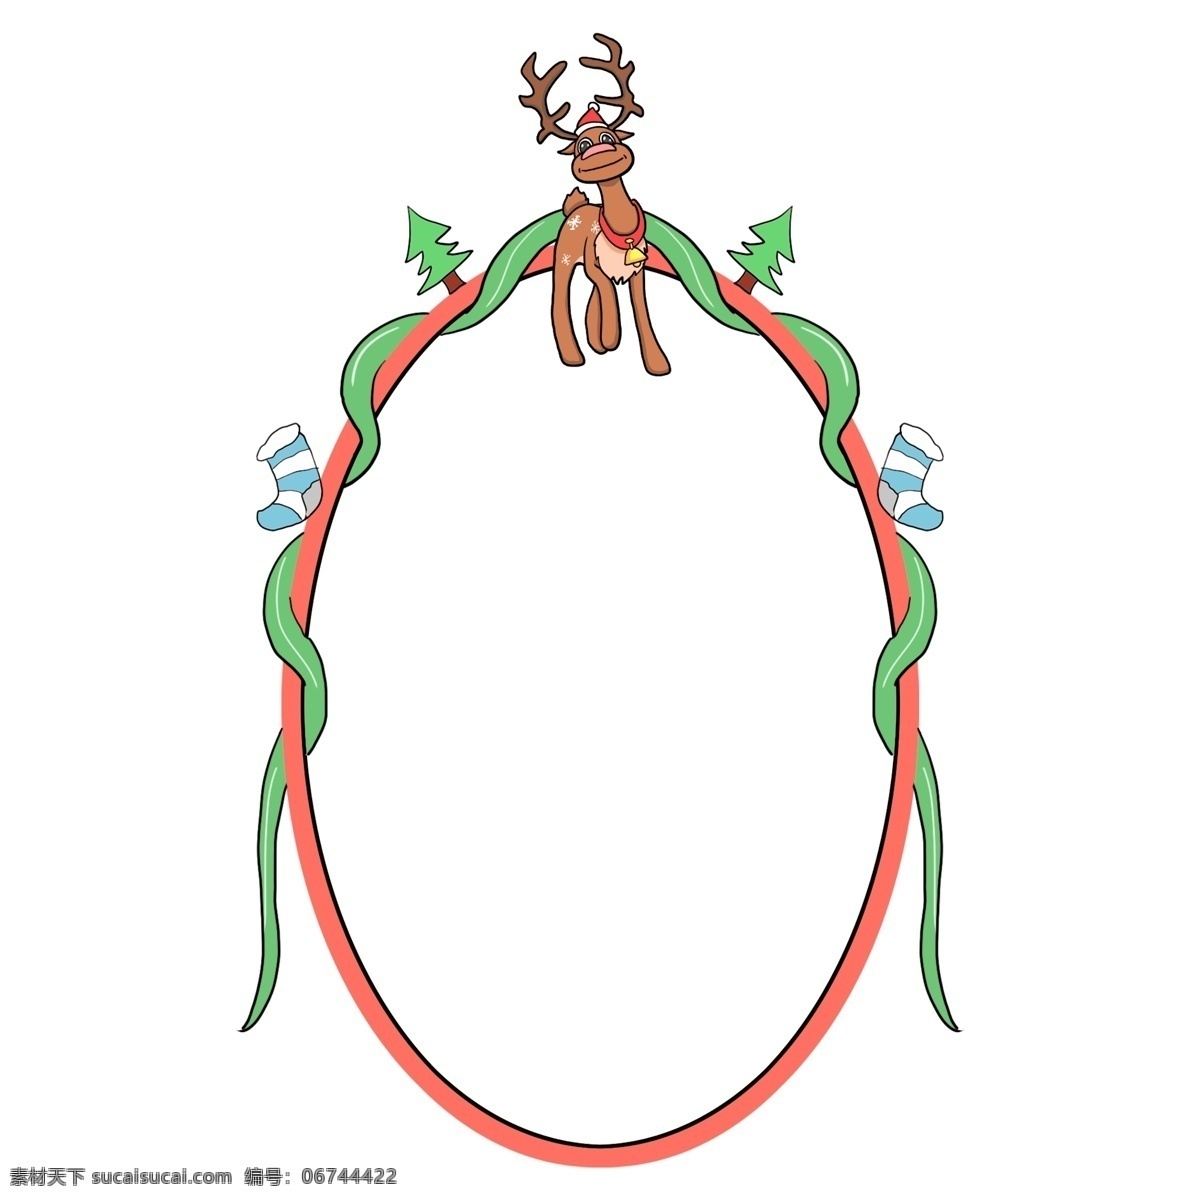 圣诞节 椭圆 小鹿 边框 圣诞节边框 可爱的小鹿 边框插画 手绘边框 红色的边框 绿色的圣诞树 小鹿边框插画